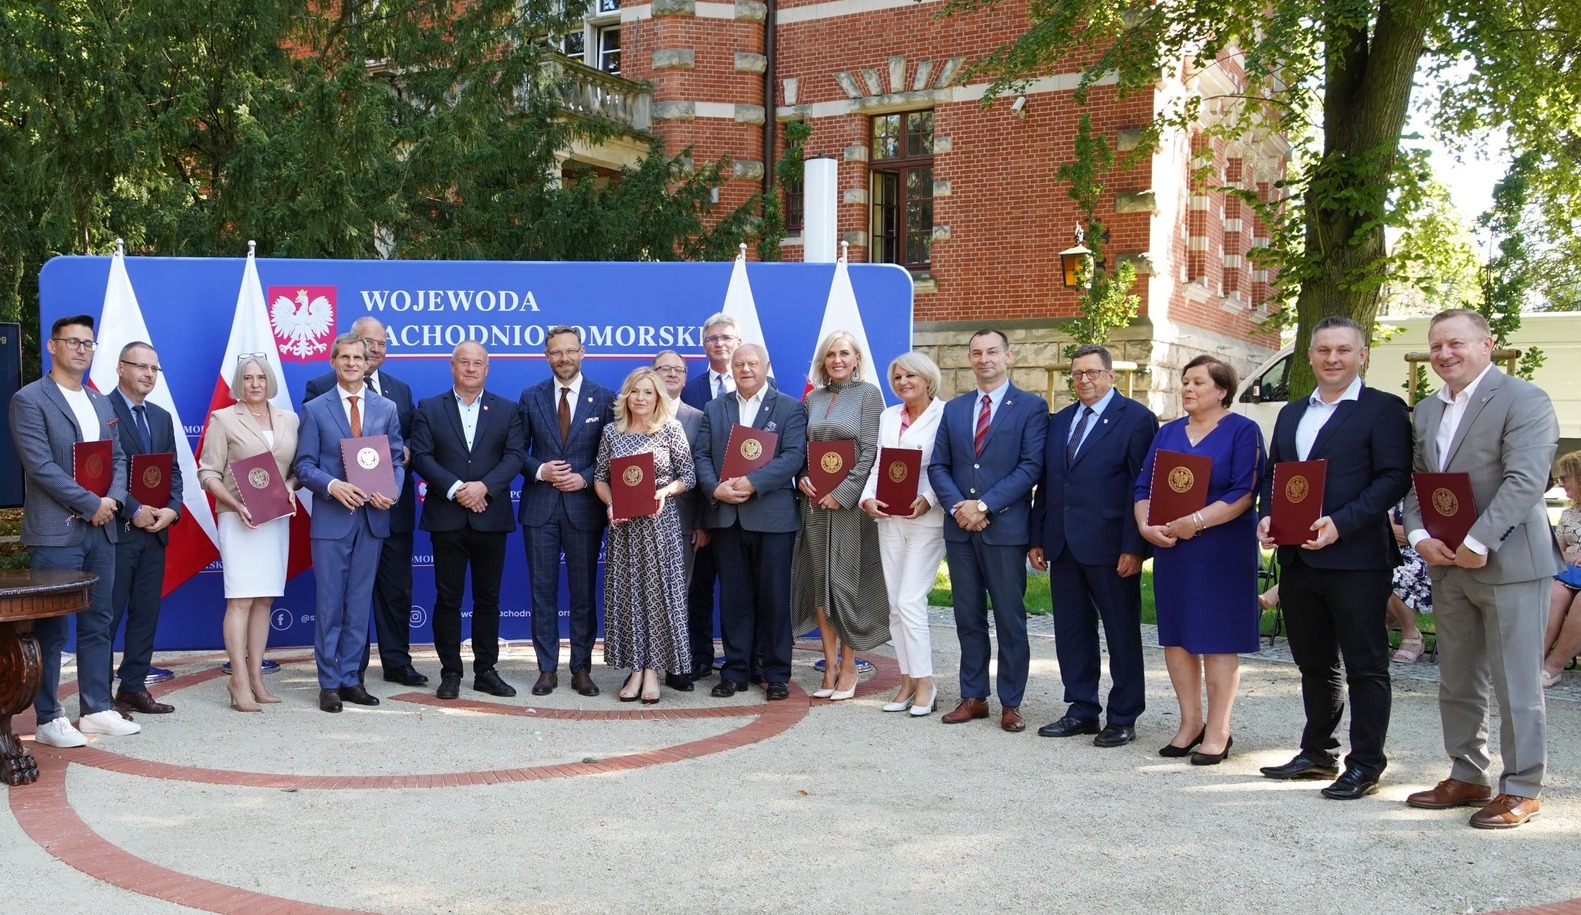 W rzędzie stoją mężczyźni i kobiety, w tle dwie flagi Polski, niebieska ścianka z napisem wojewoda zachodniopomorski, za nią drzewa i fragment budynku z czerwonej cegły